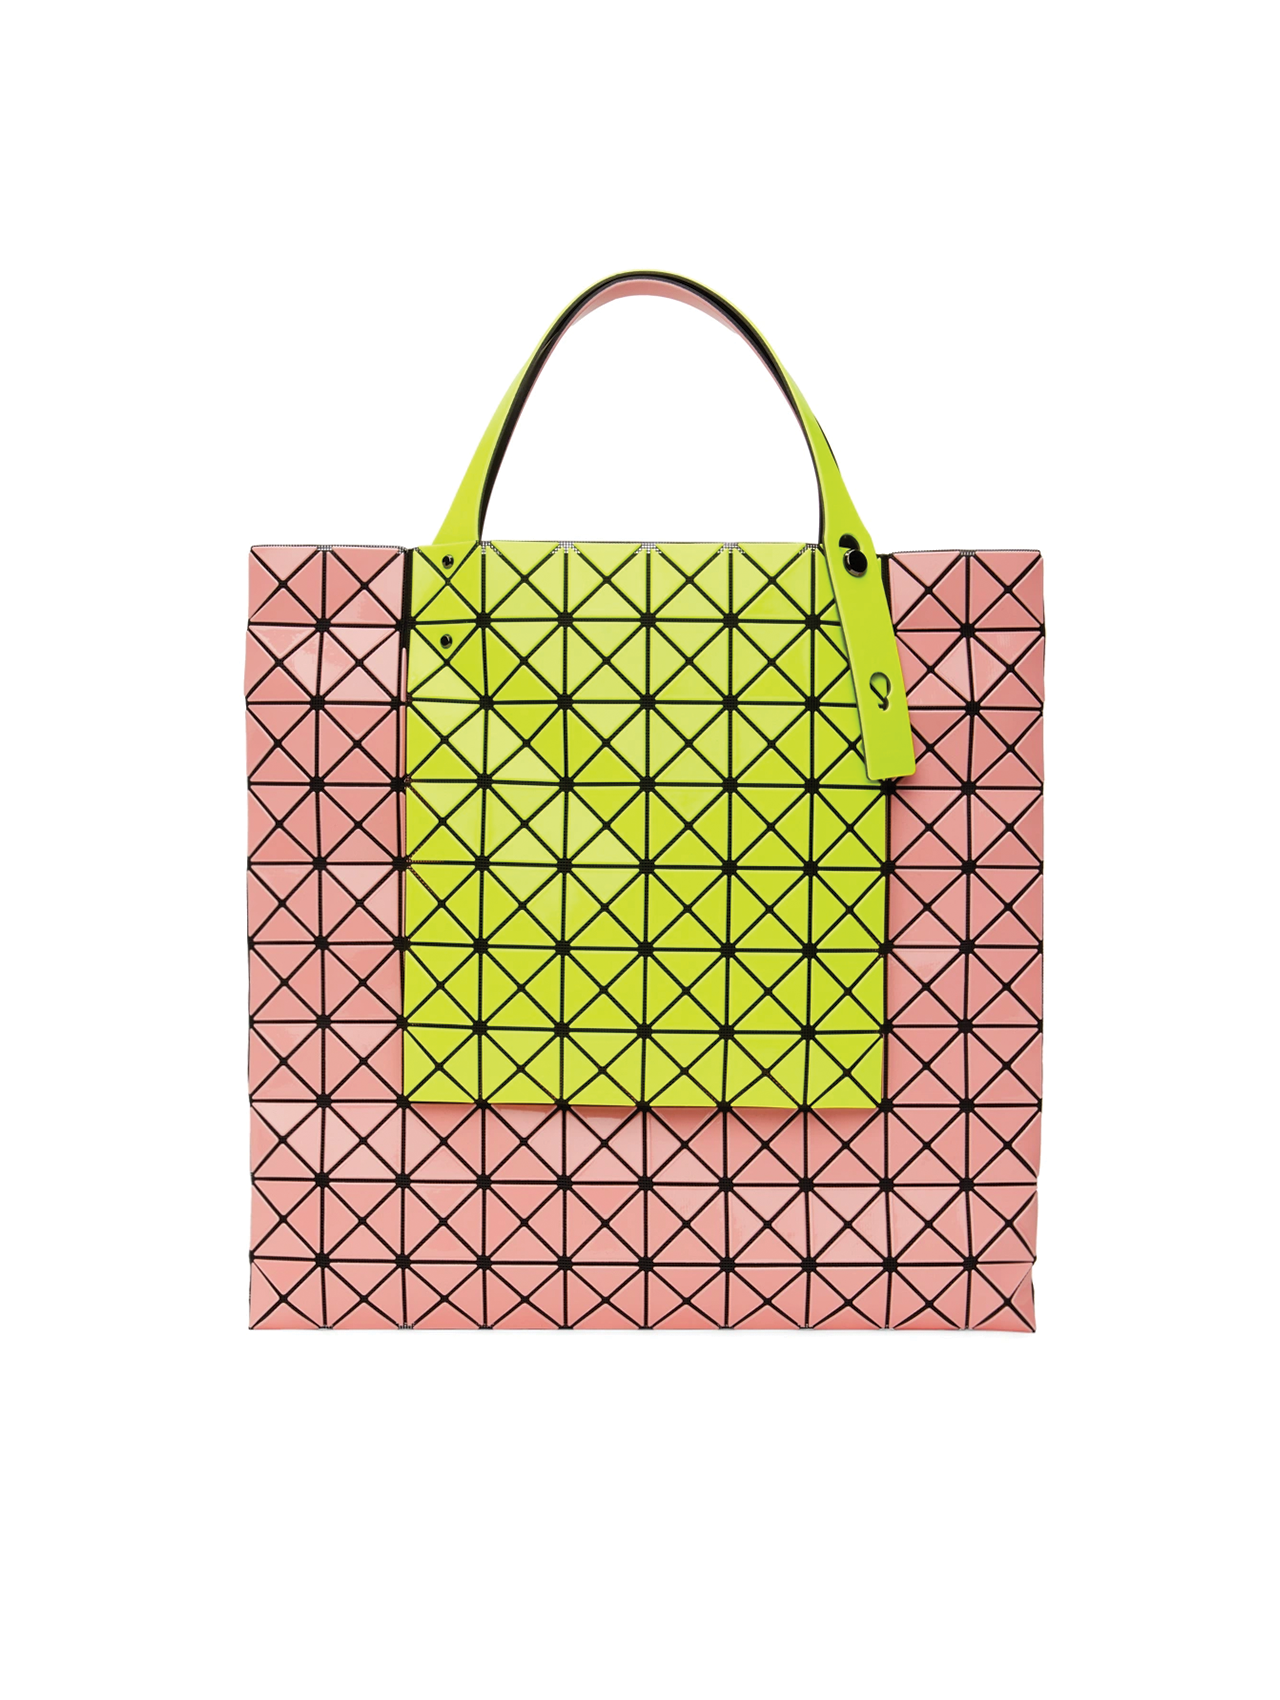 Bao Bao Issey Miyake  Prism Kangaroo Tote Bag in Yellow & Coral Pink –  Henrik Vibskov Boutique